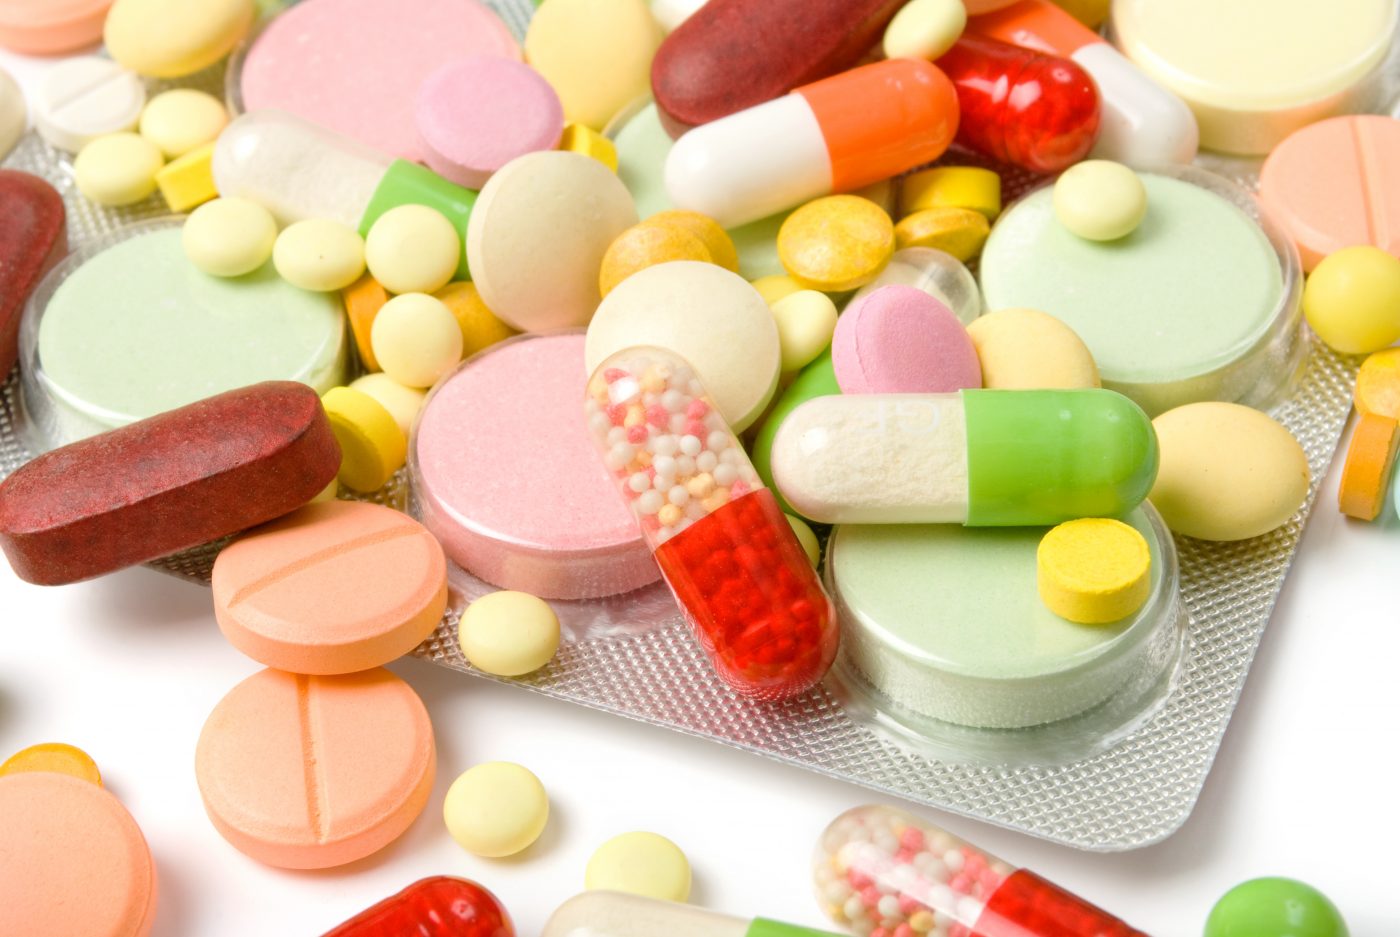 Quảng cáo sai chất lượng dược phẩm, Bộ Y tế chỉ đạo “dẹp loạn”